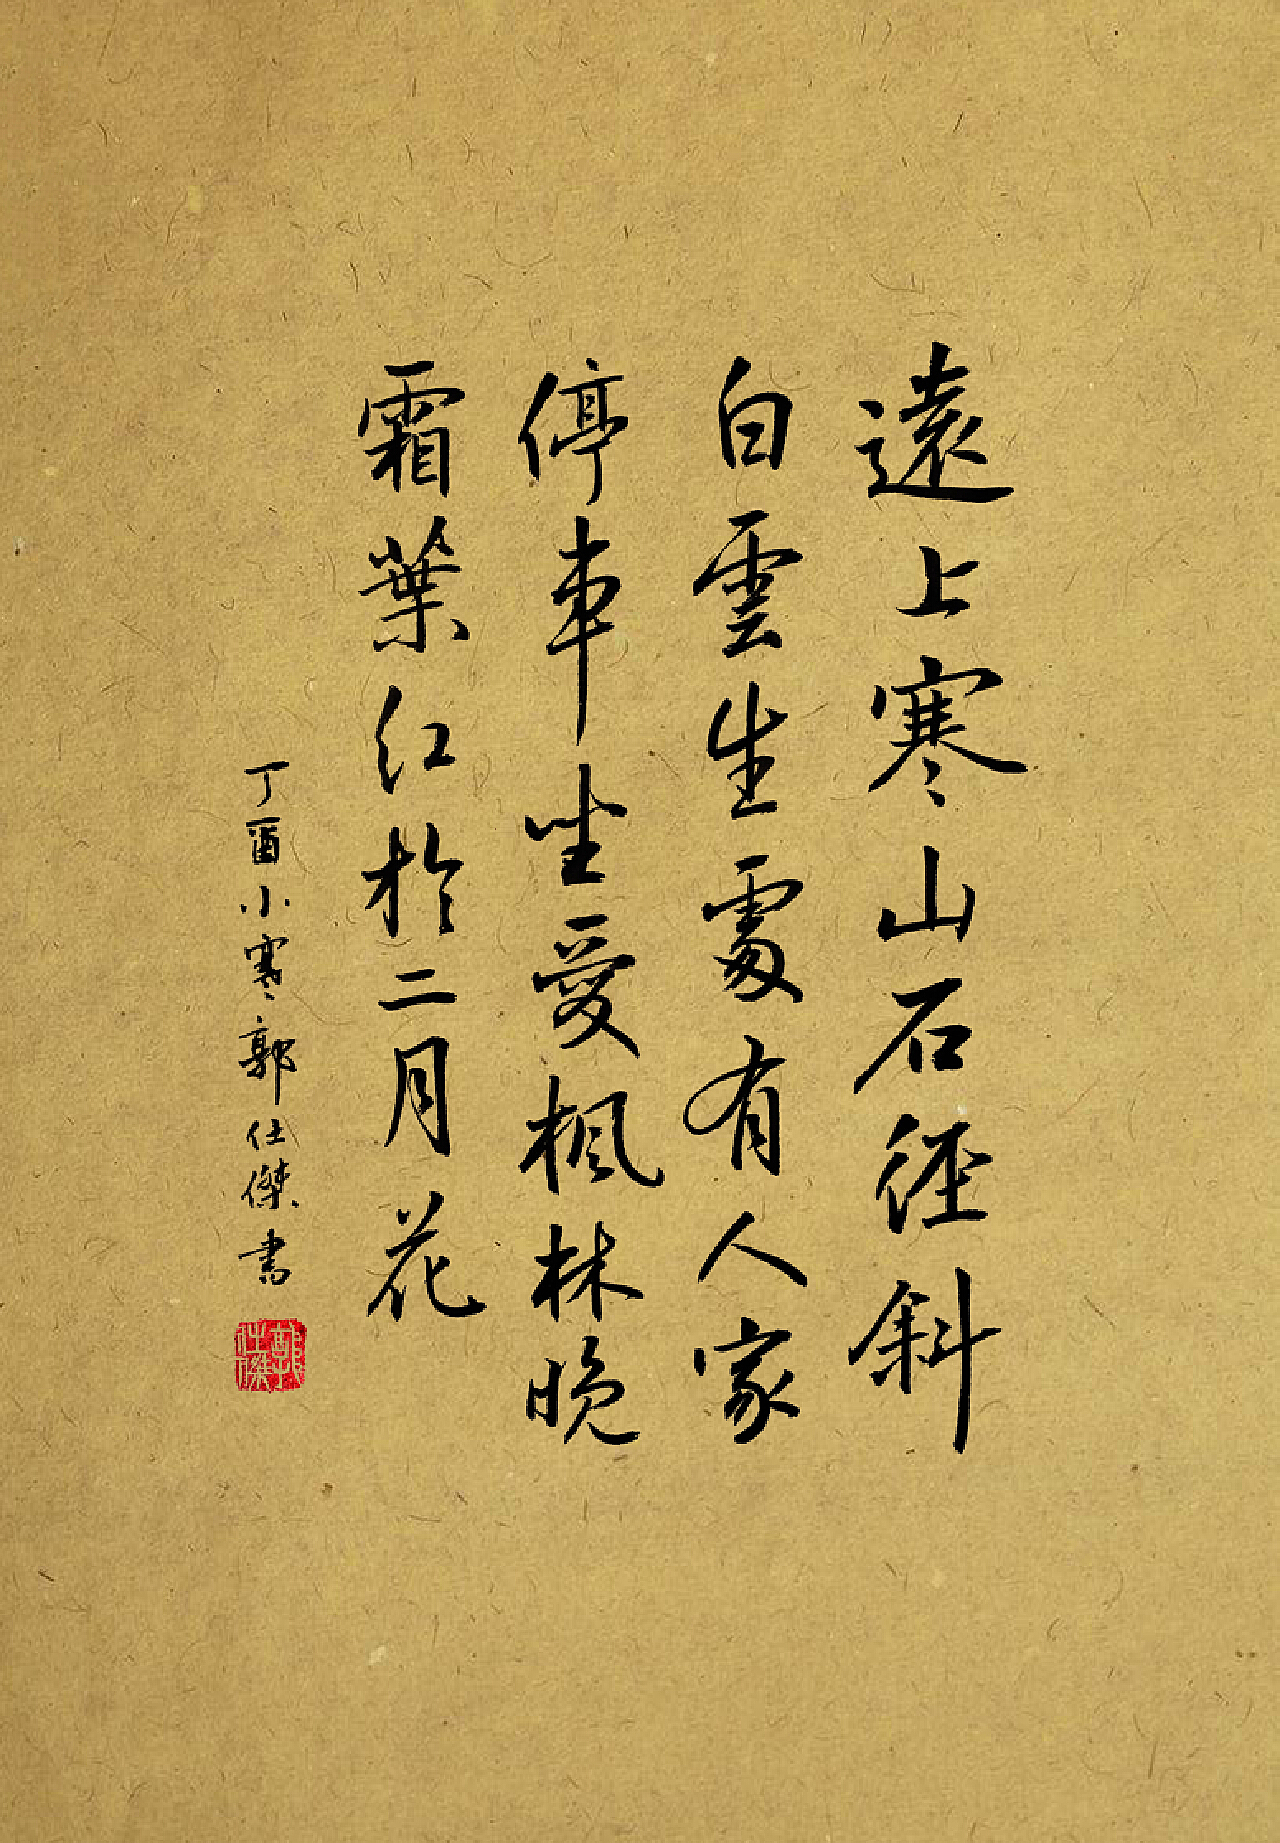 中国传统毛笔字是一门源远流长的书法艺术，有着悠久的历史和独特的审美标准。毛笔字书写技巧的掌握和运用，对于中国书法的学习和实践至关重要。